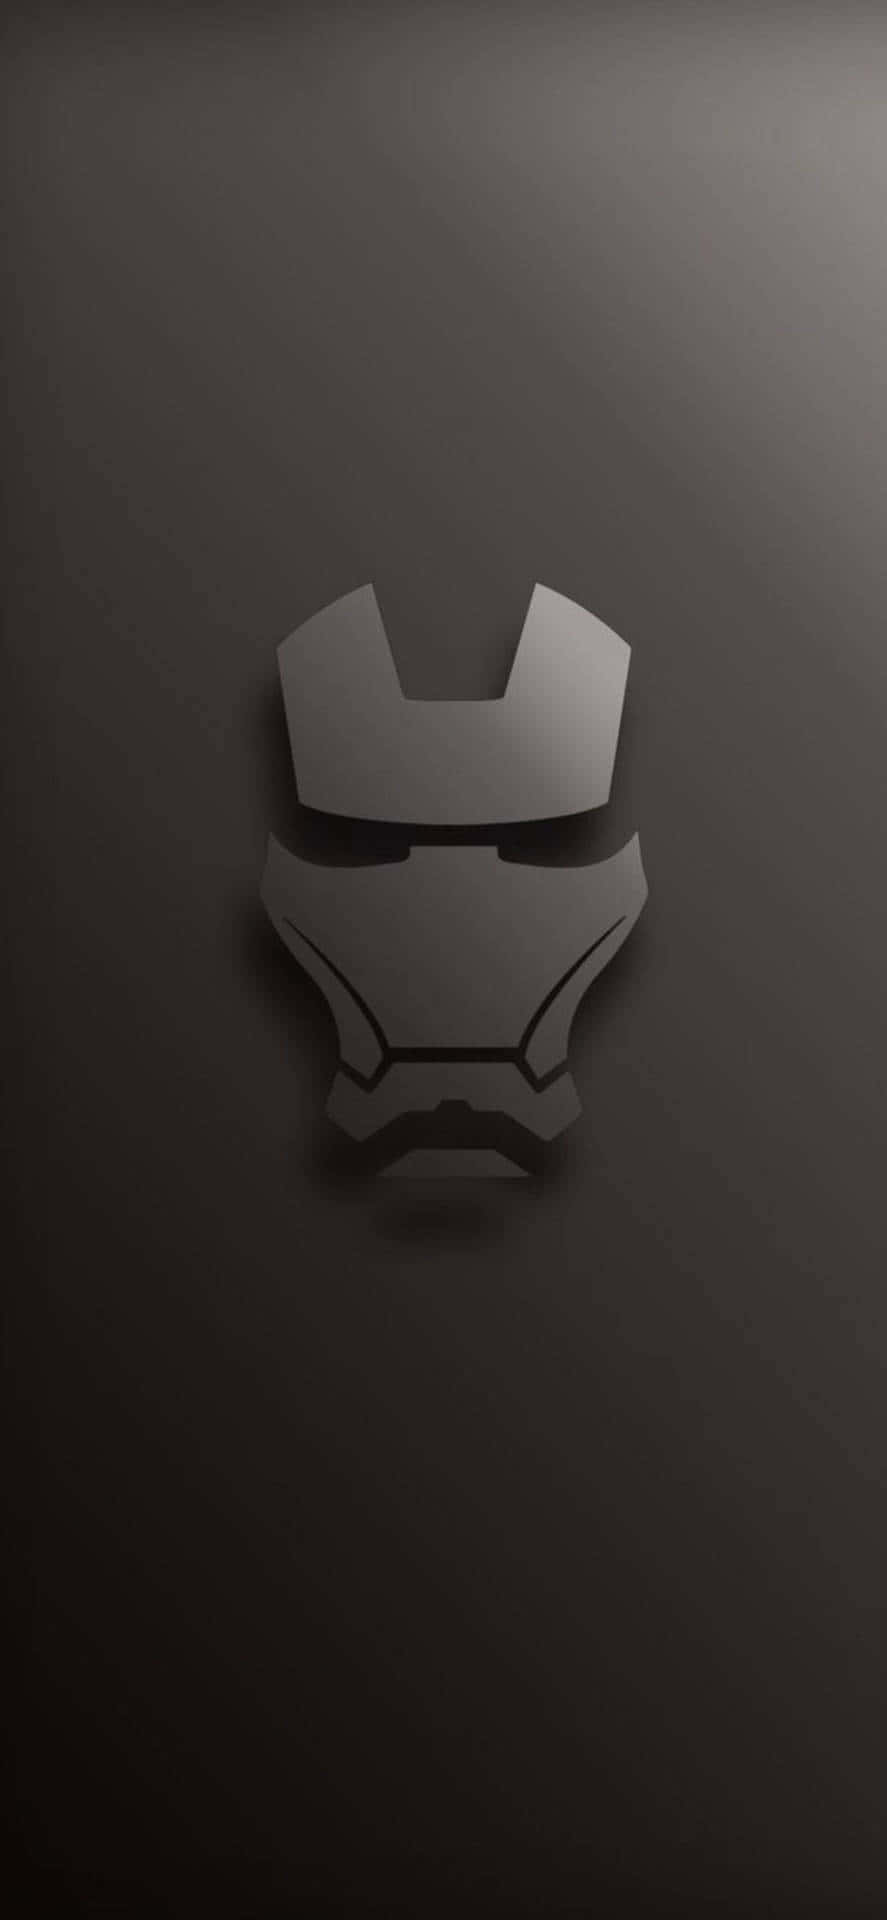 Einikonischer Iron Man In Schwarz Und Weiß Wallpaper